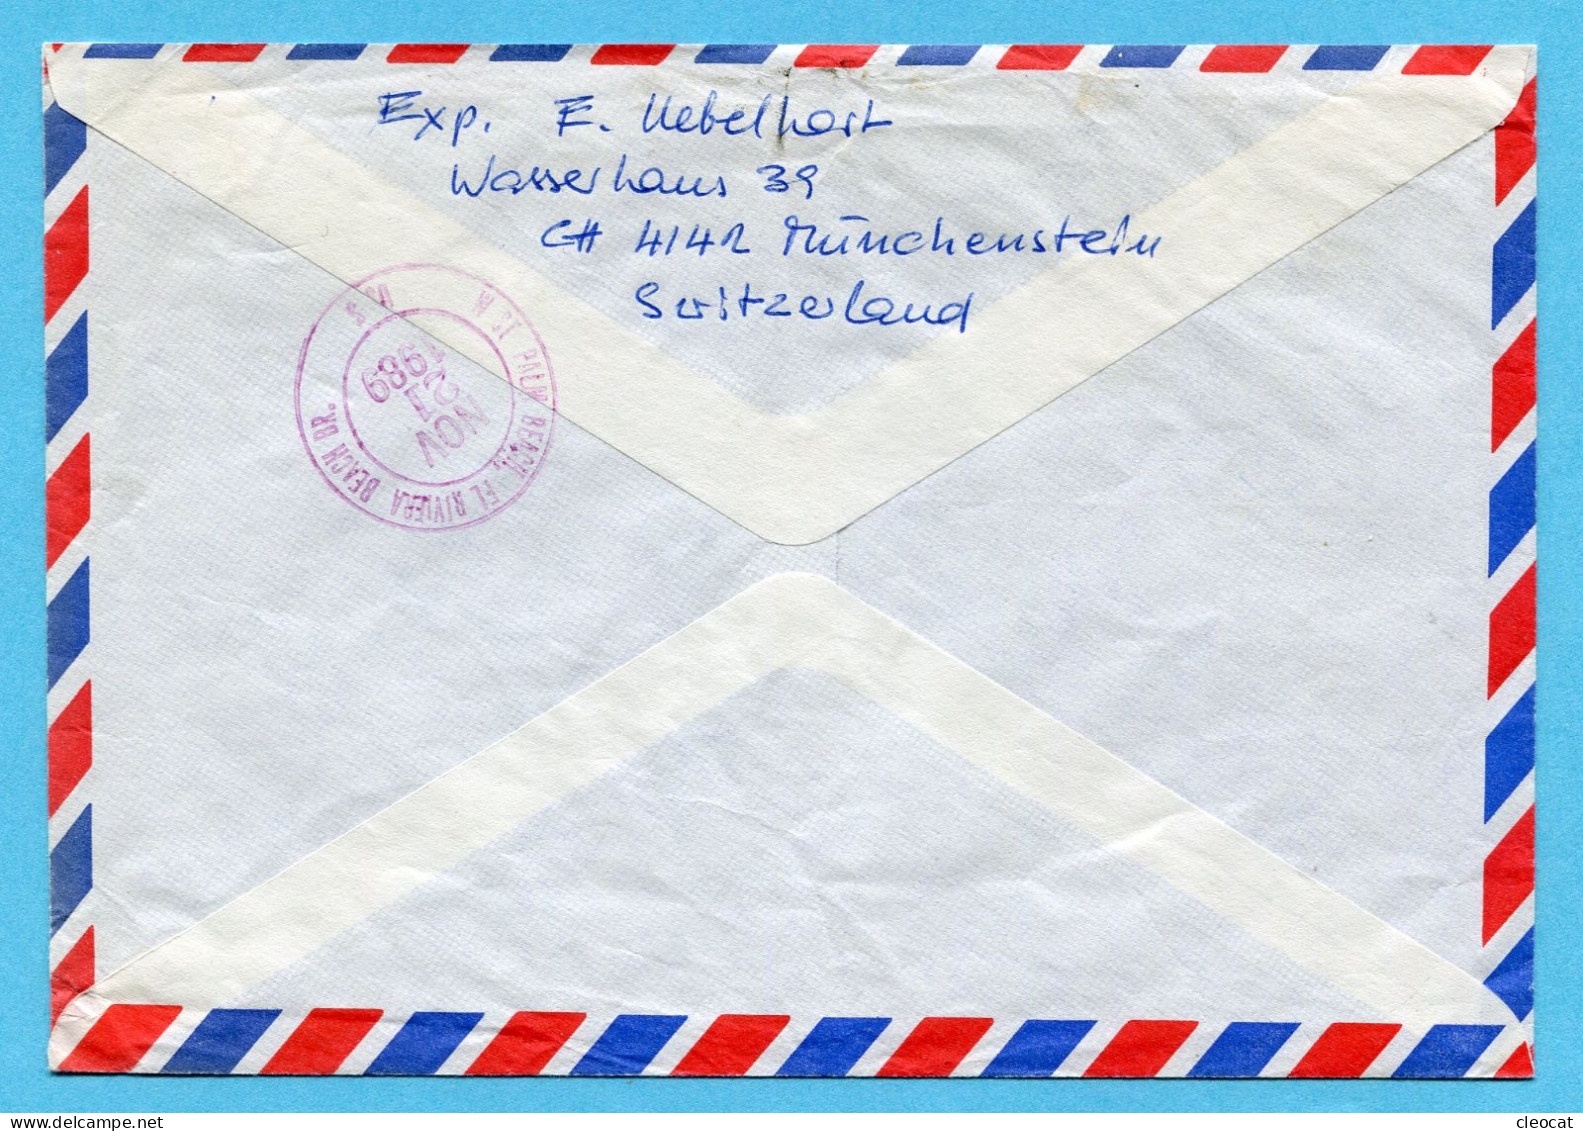 Brief Von Basel Nach Florida 1989 - 2 X SBK 686 (Mi Nr. 1242) Mit Vollstempel - Covers & Documents